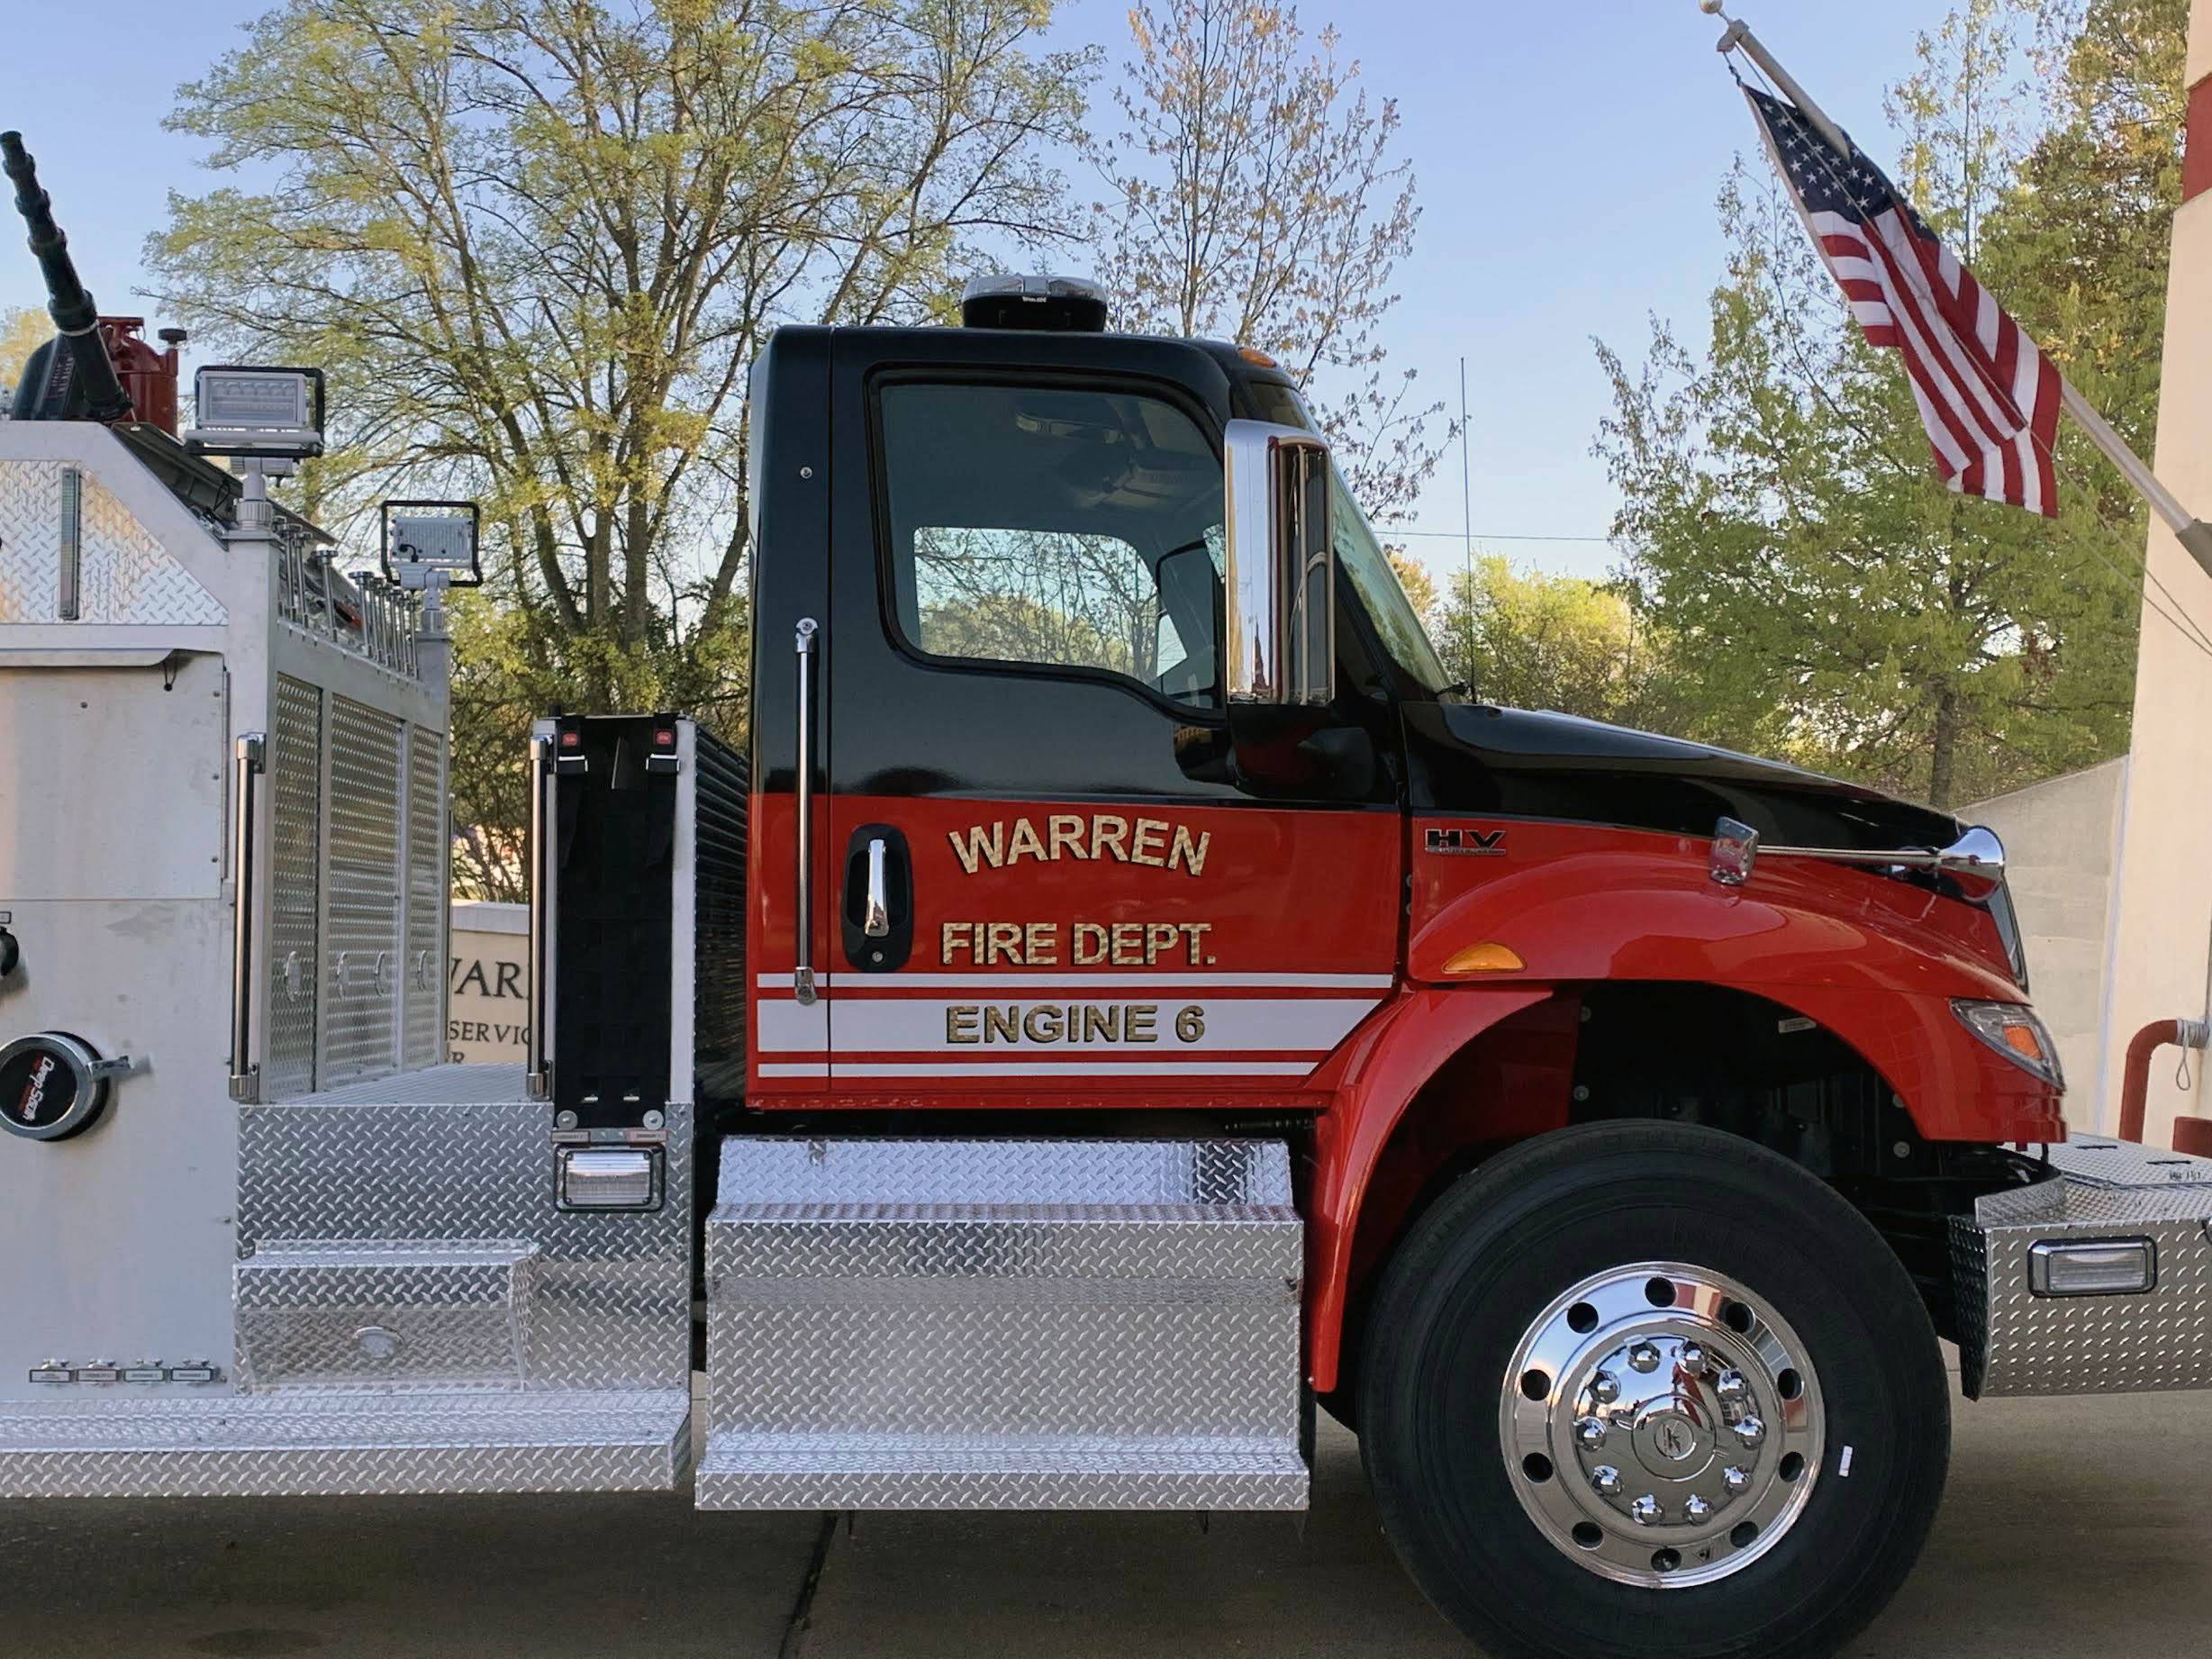 New Warren fire truck arrives in town